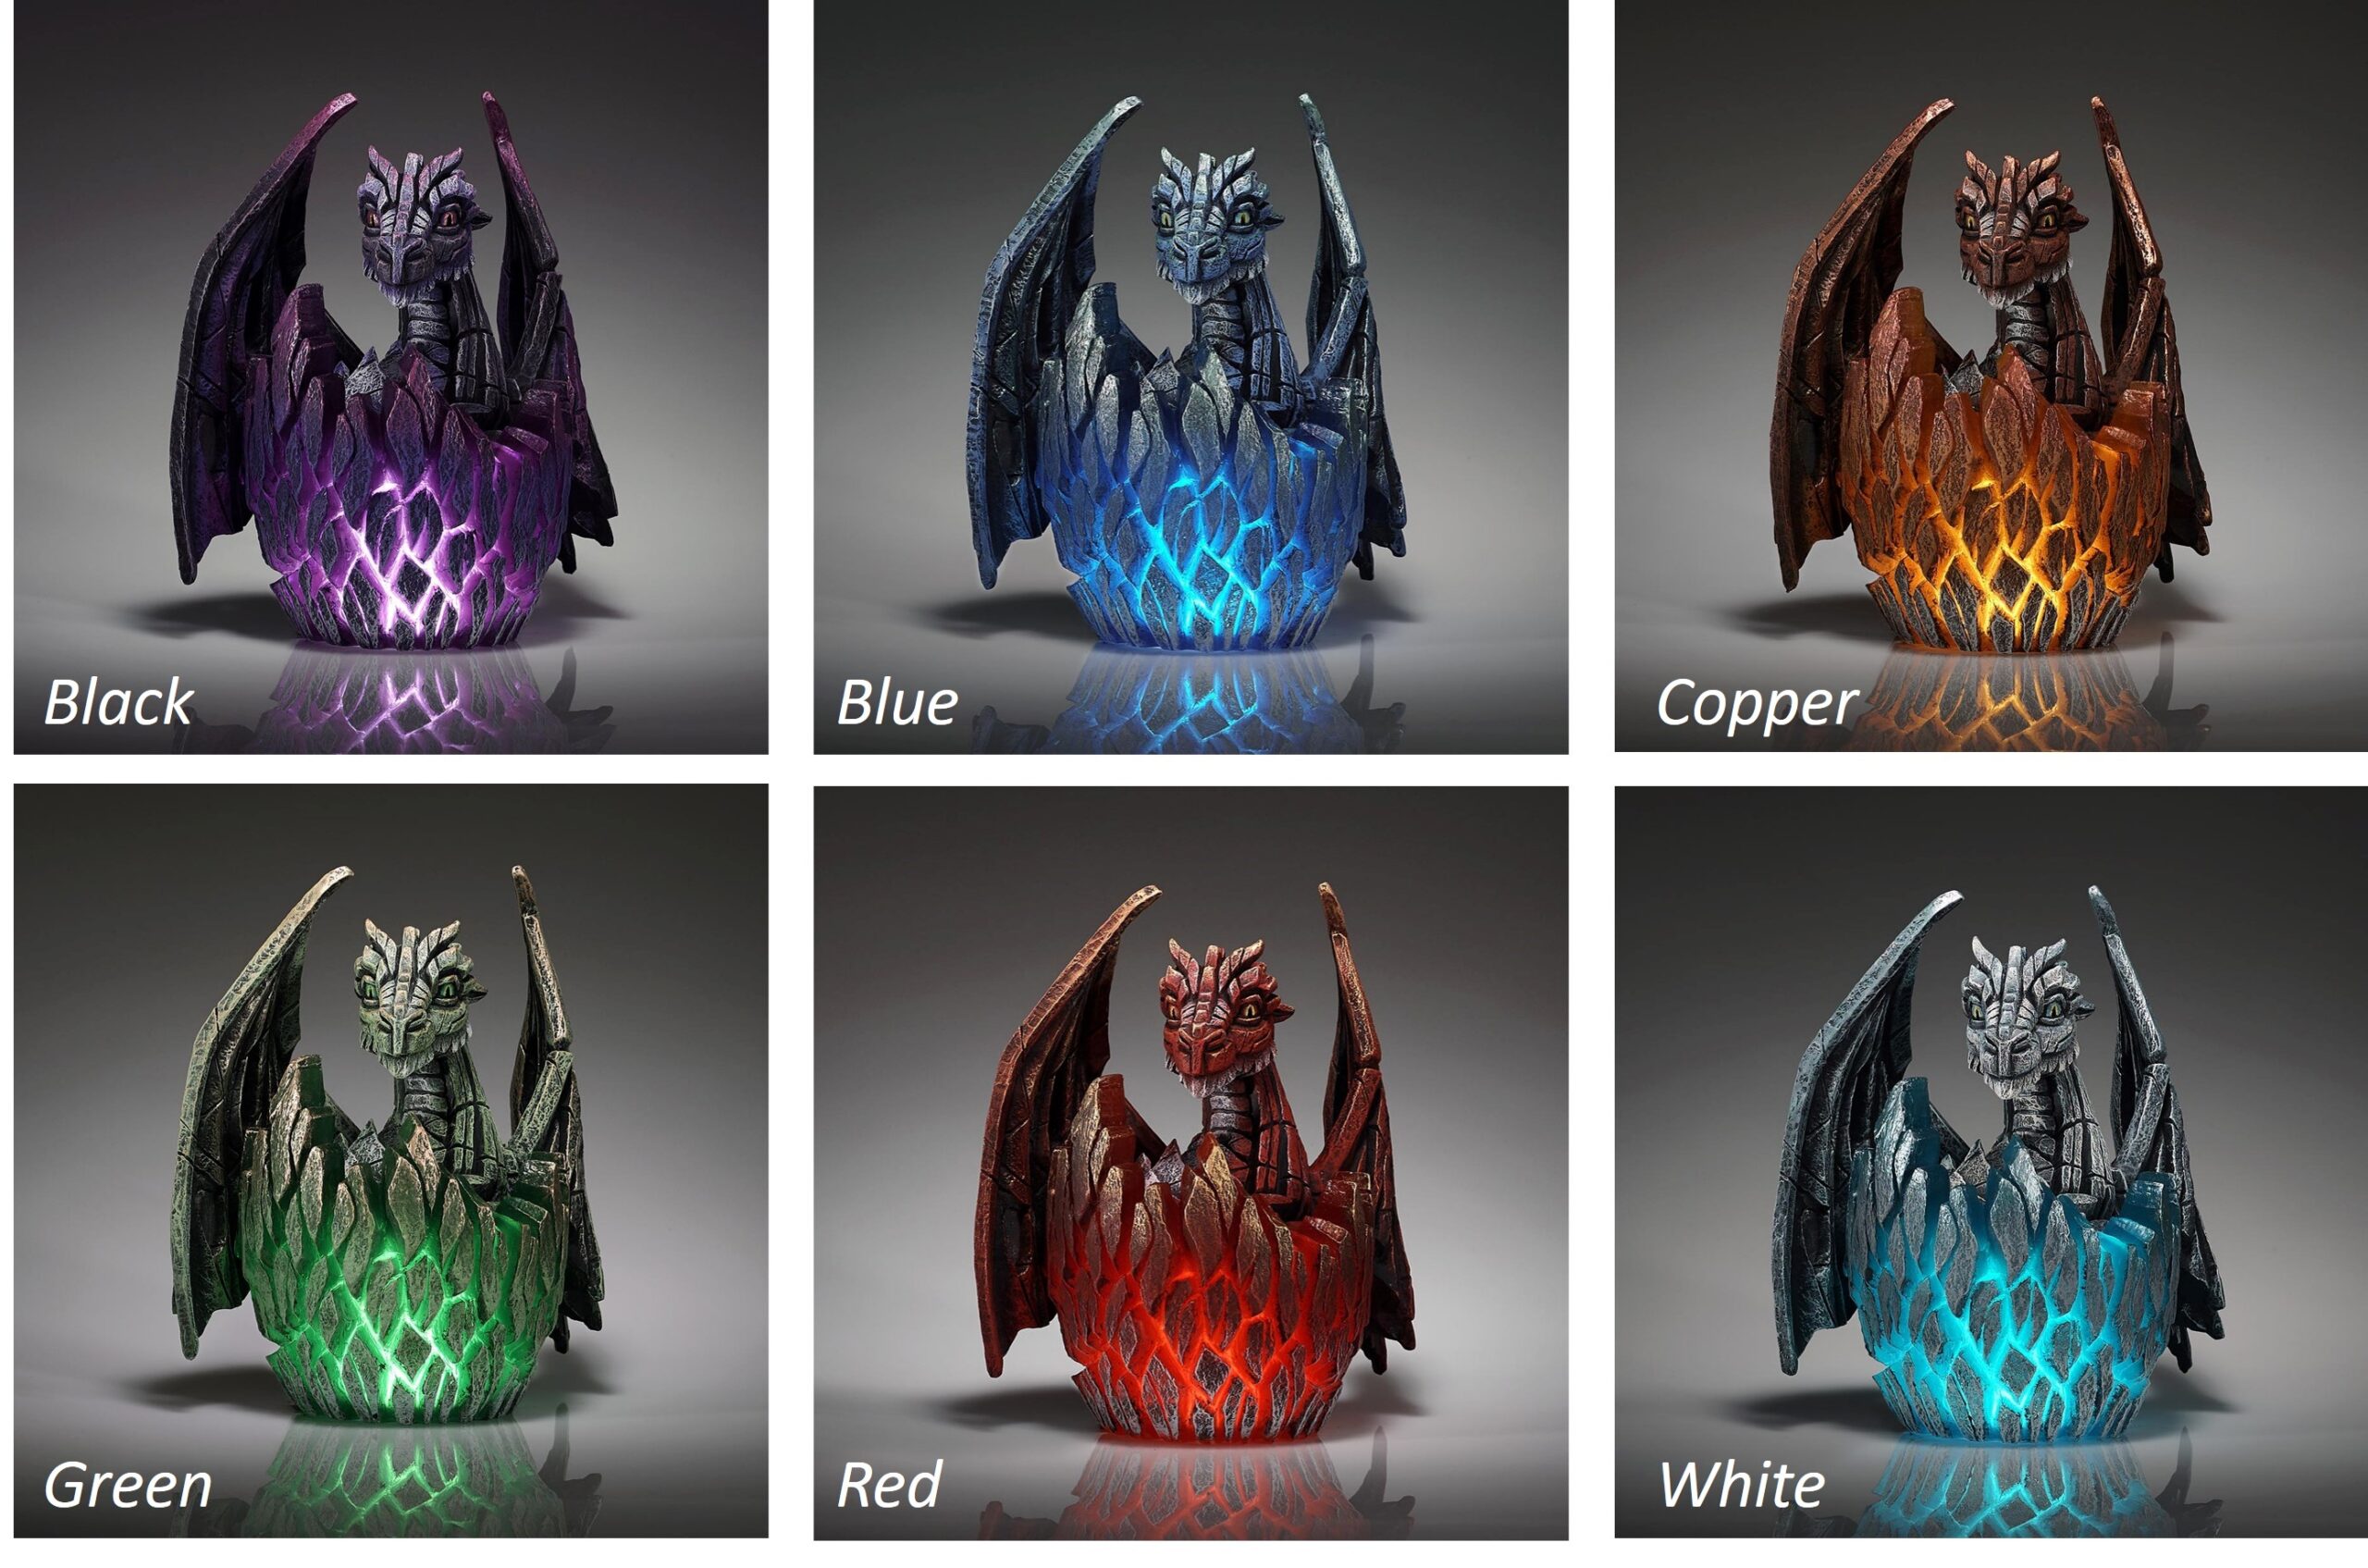 edge-illuminated-dragon-sculptures